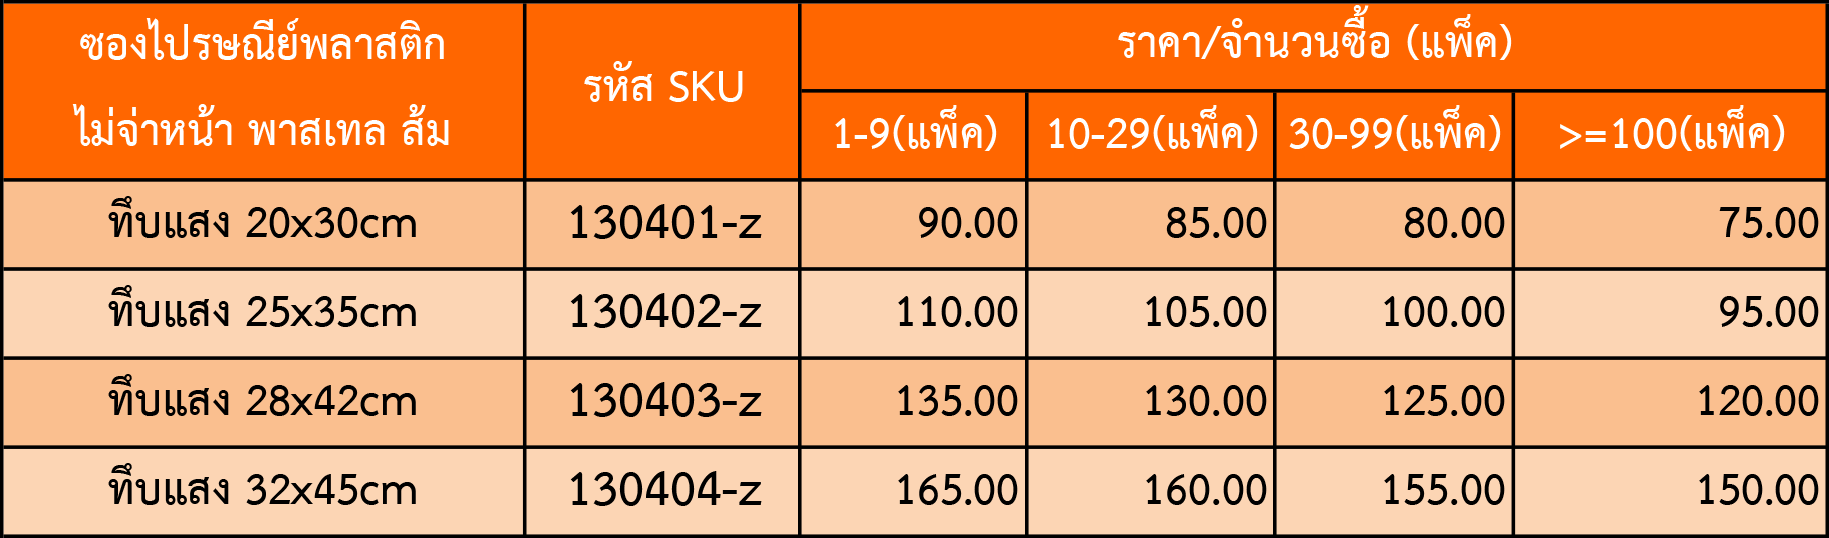 bv price table z100191 1 4